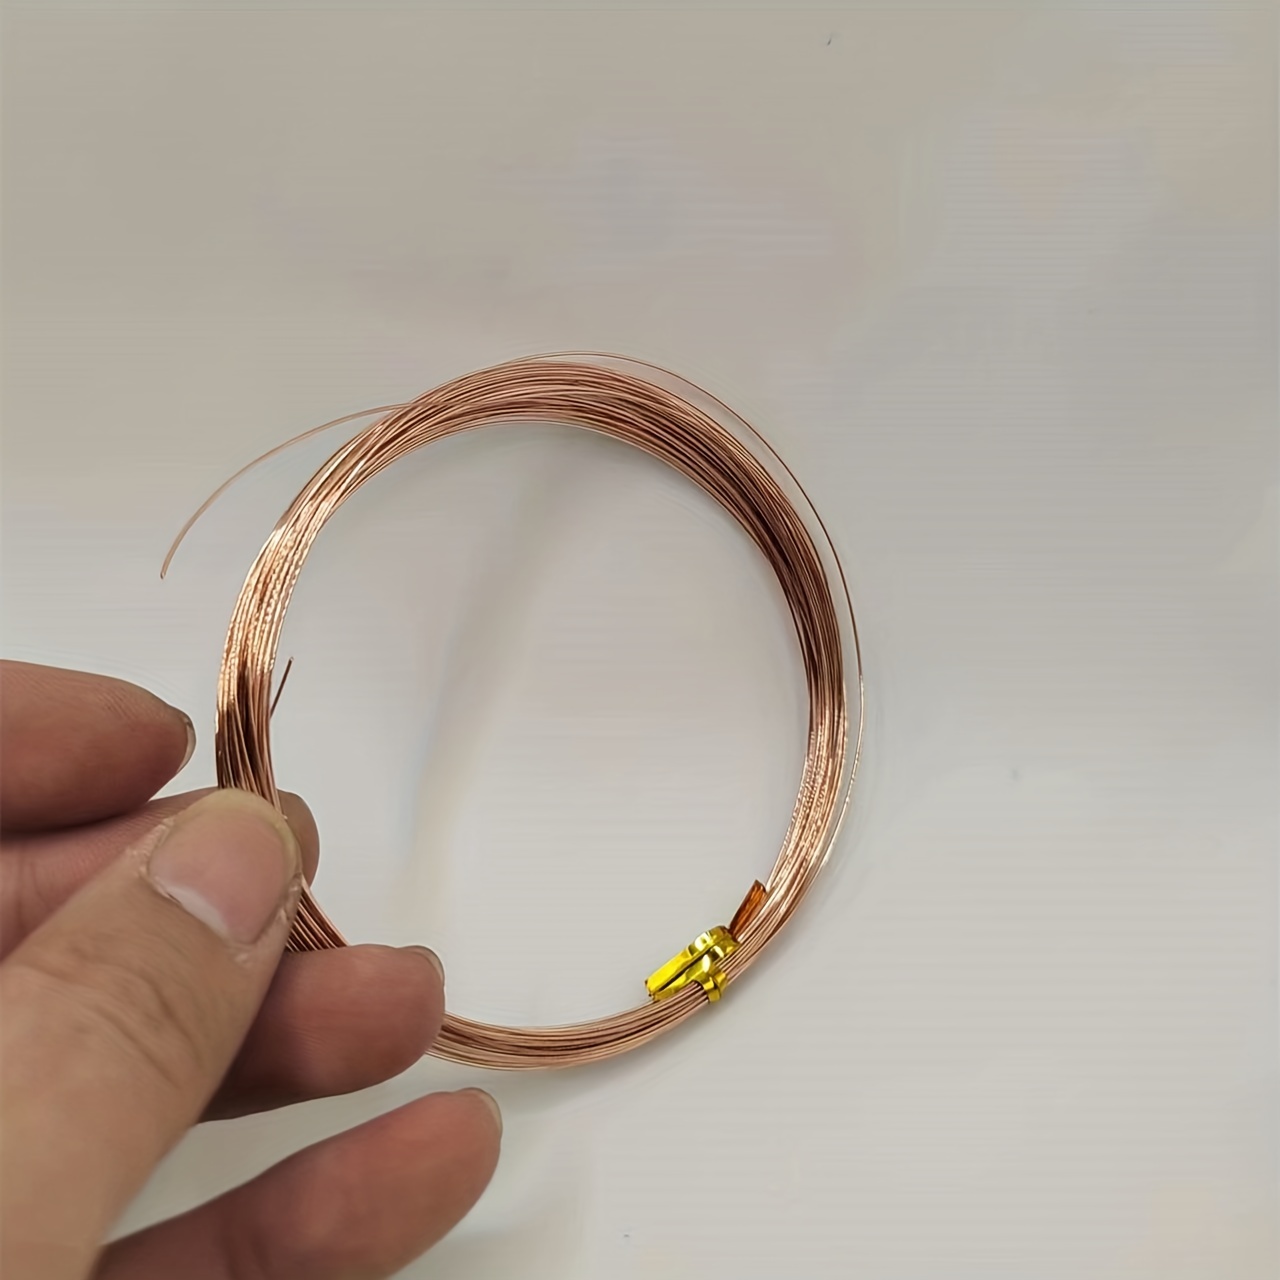 No. 15 Bare Copper Wire Pure Copper Wire (one Roll) 10 - Temu